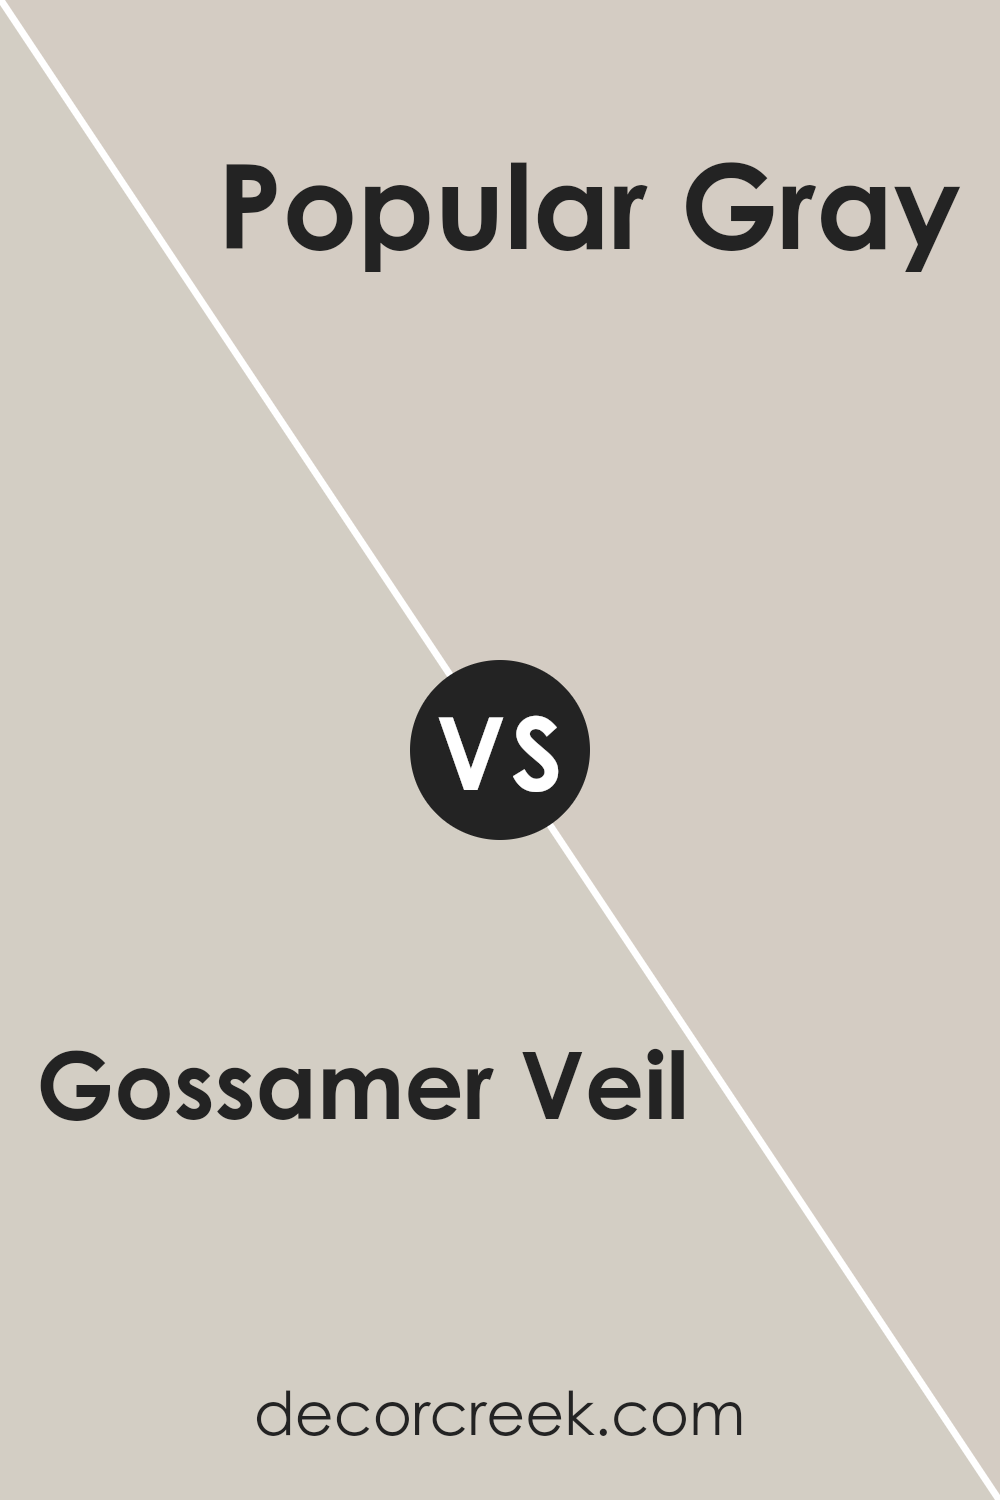 gossamer_veil_sw_9165_vs_popular_gray_sw_6071